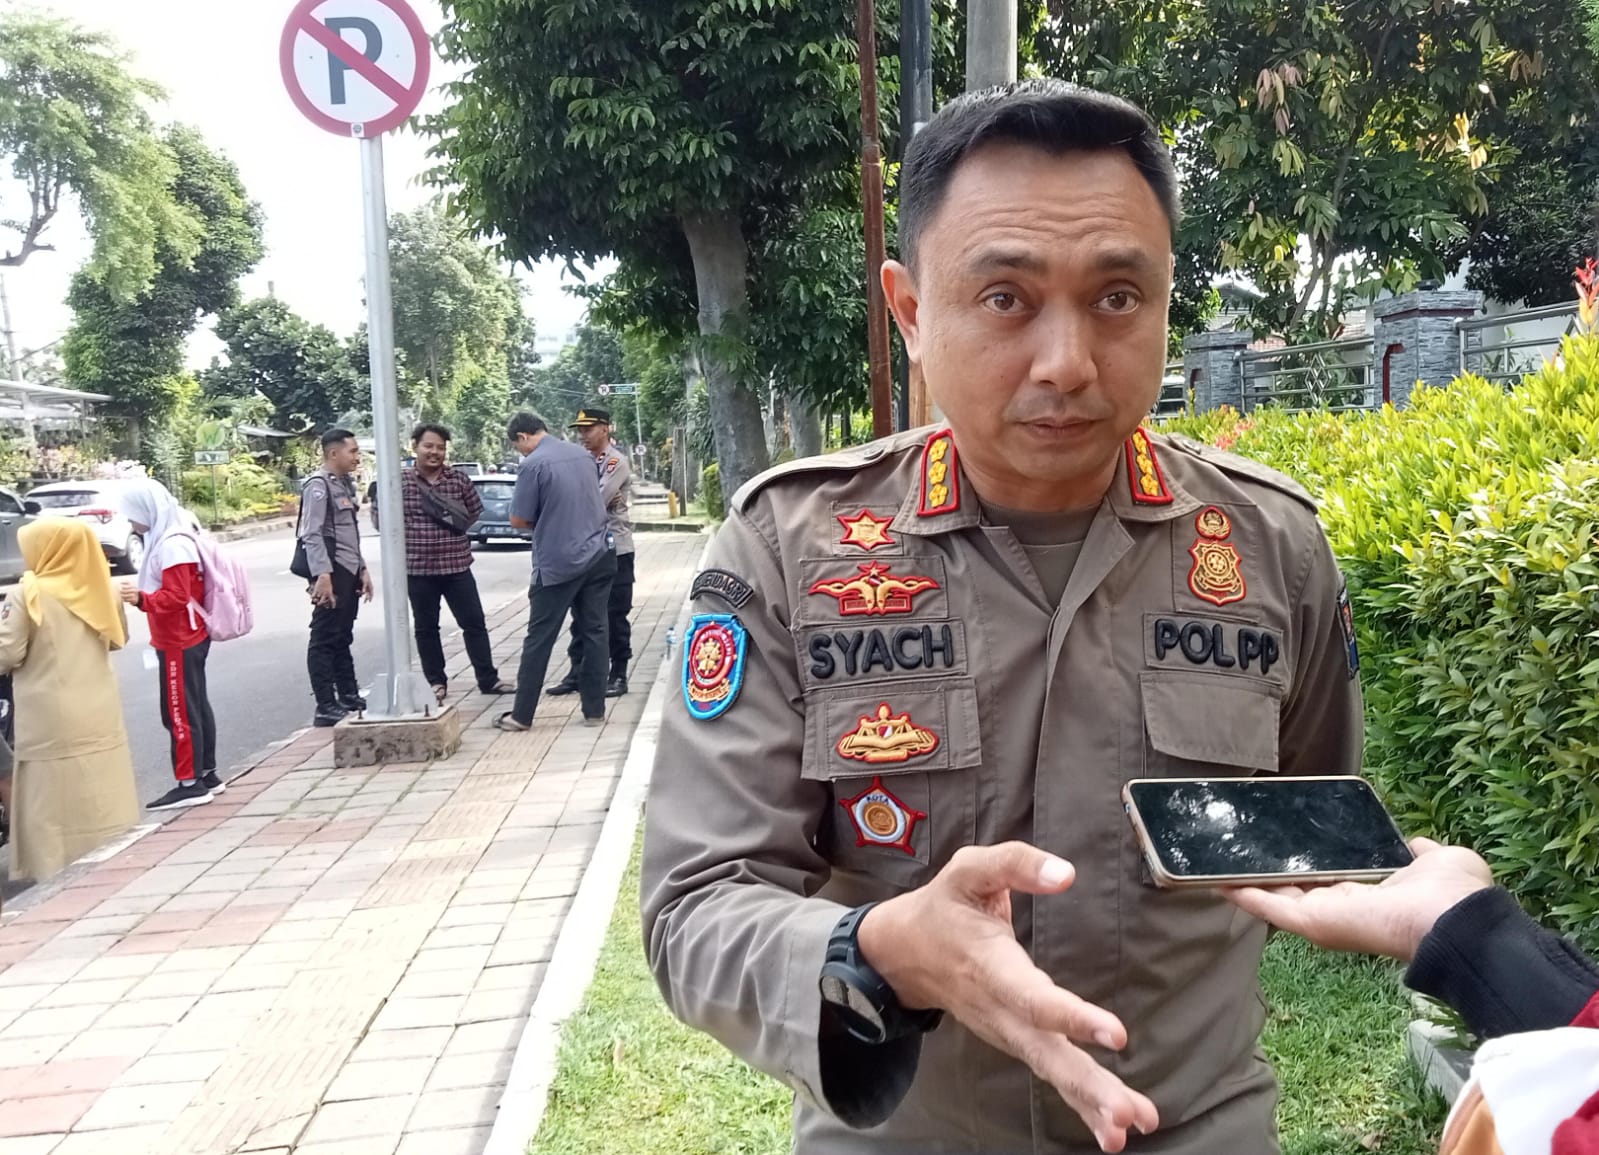 Kepala Satpol PP Kota Bogor, Agustian Syach. (Yudha Prananda / Jabar Ekspres)